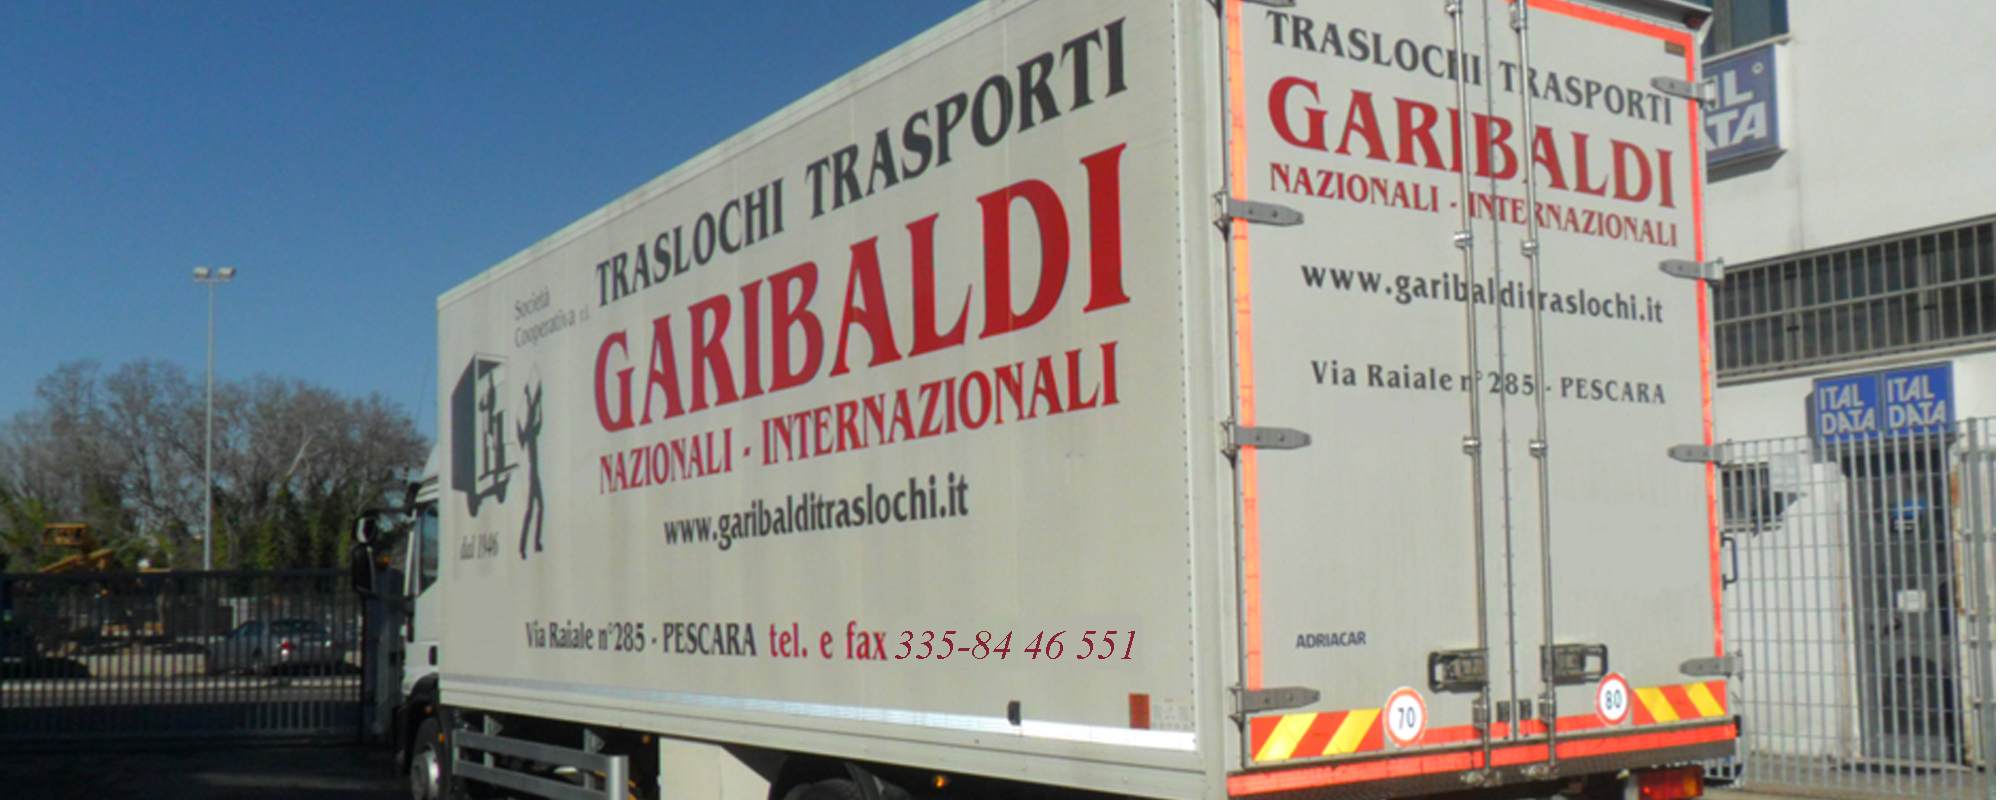 Garibaldi Traslochi e Servizi, a  Pescara dal 1946